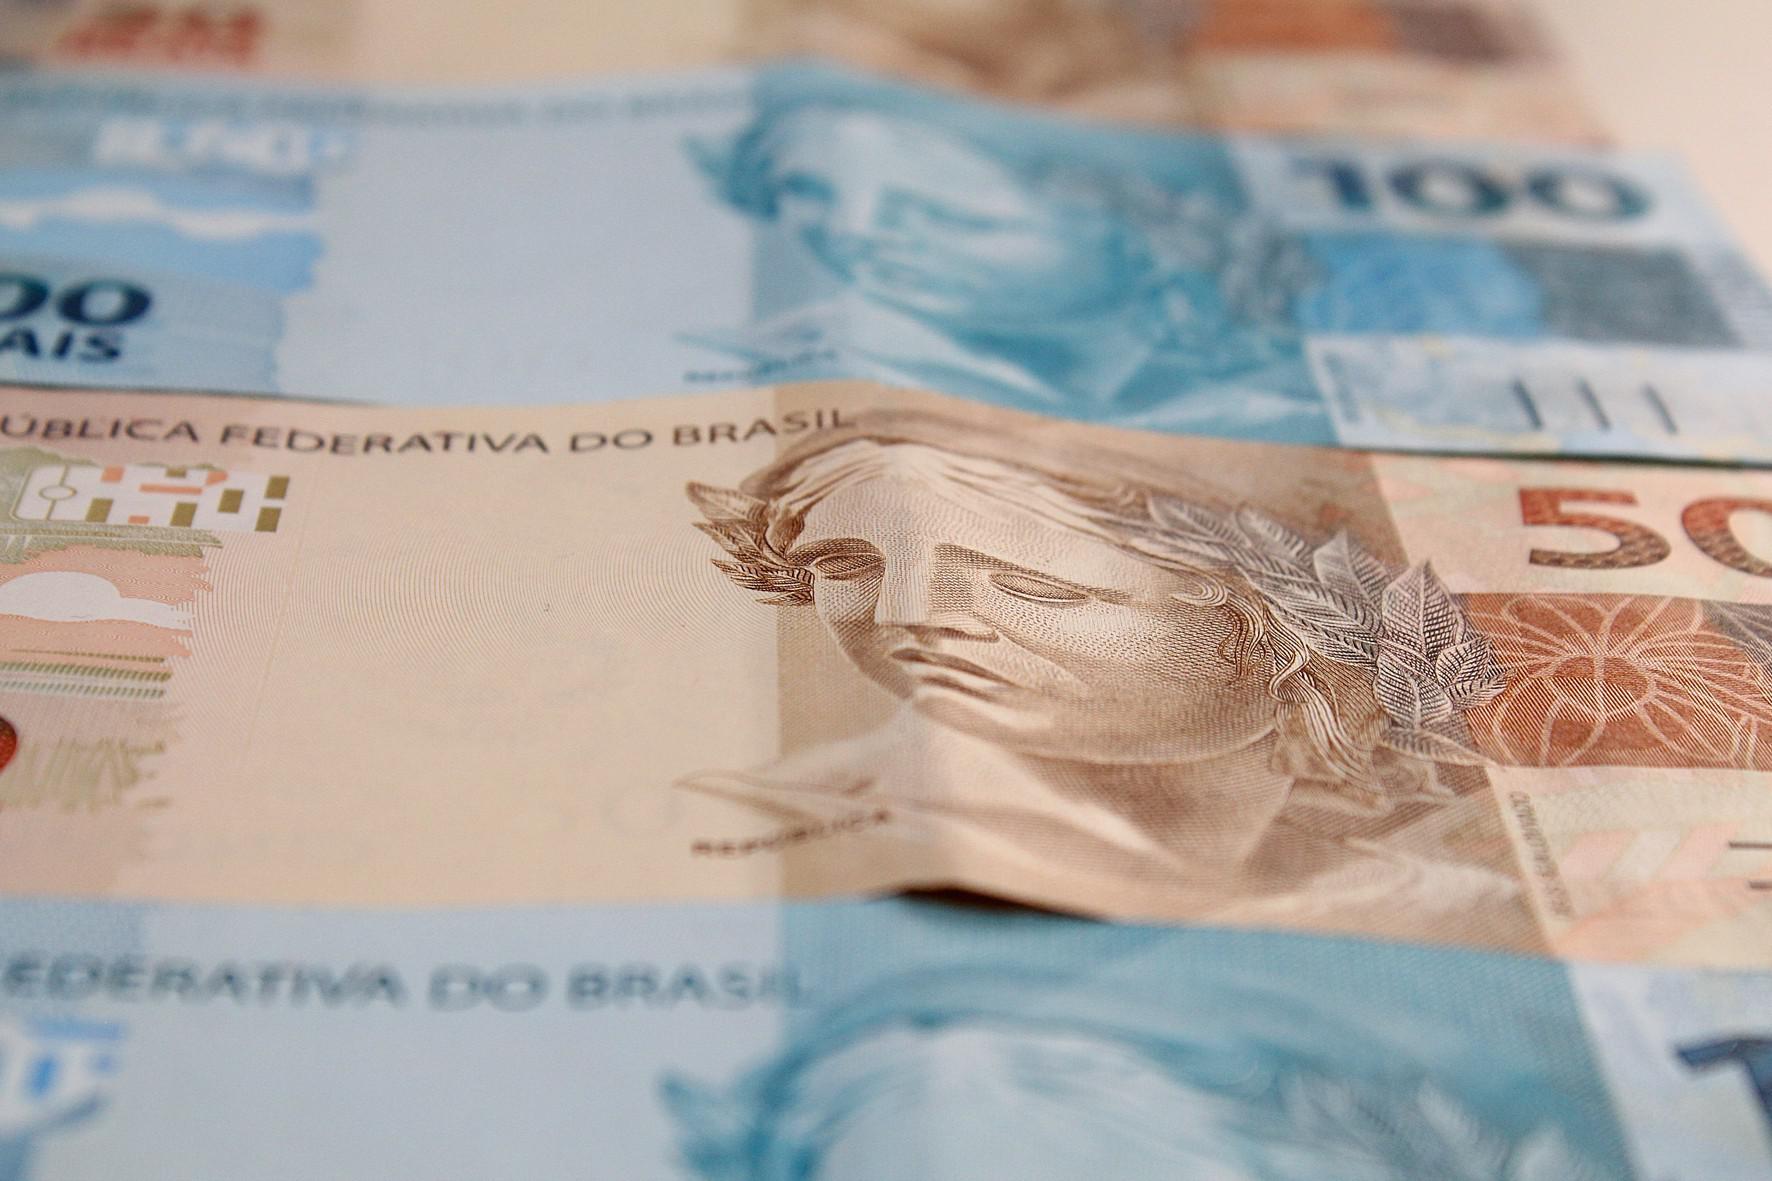 Dinheiro, auxílio brasil, taxa de juros